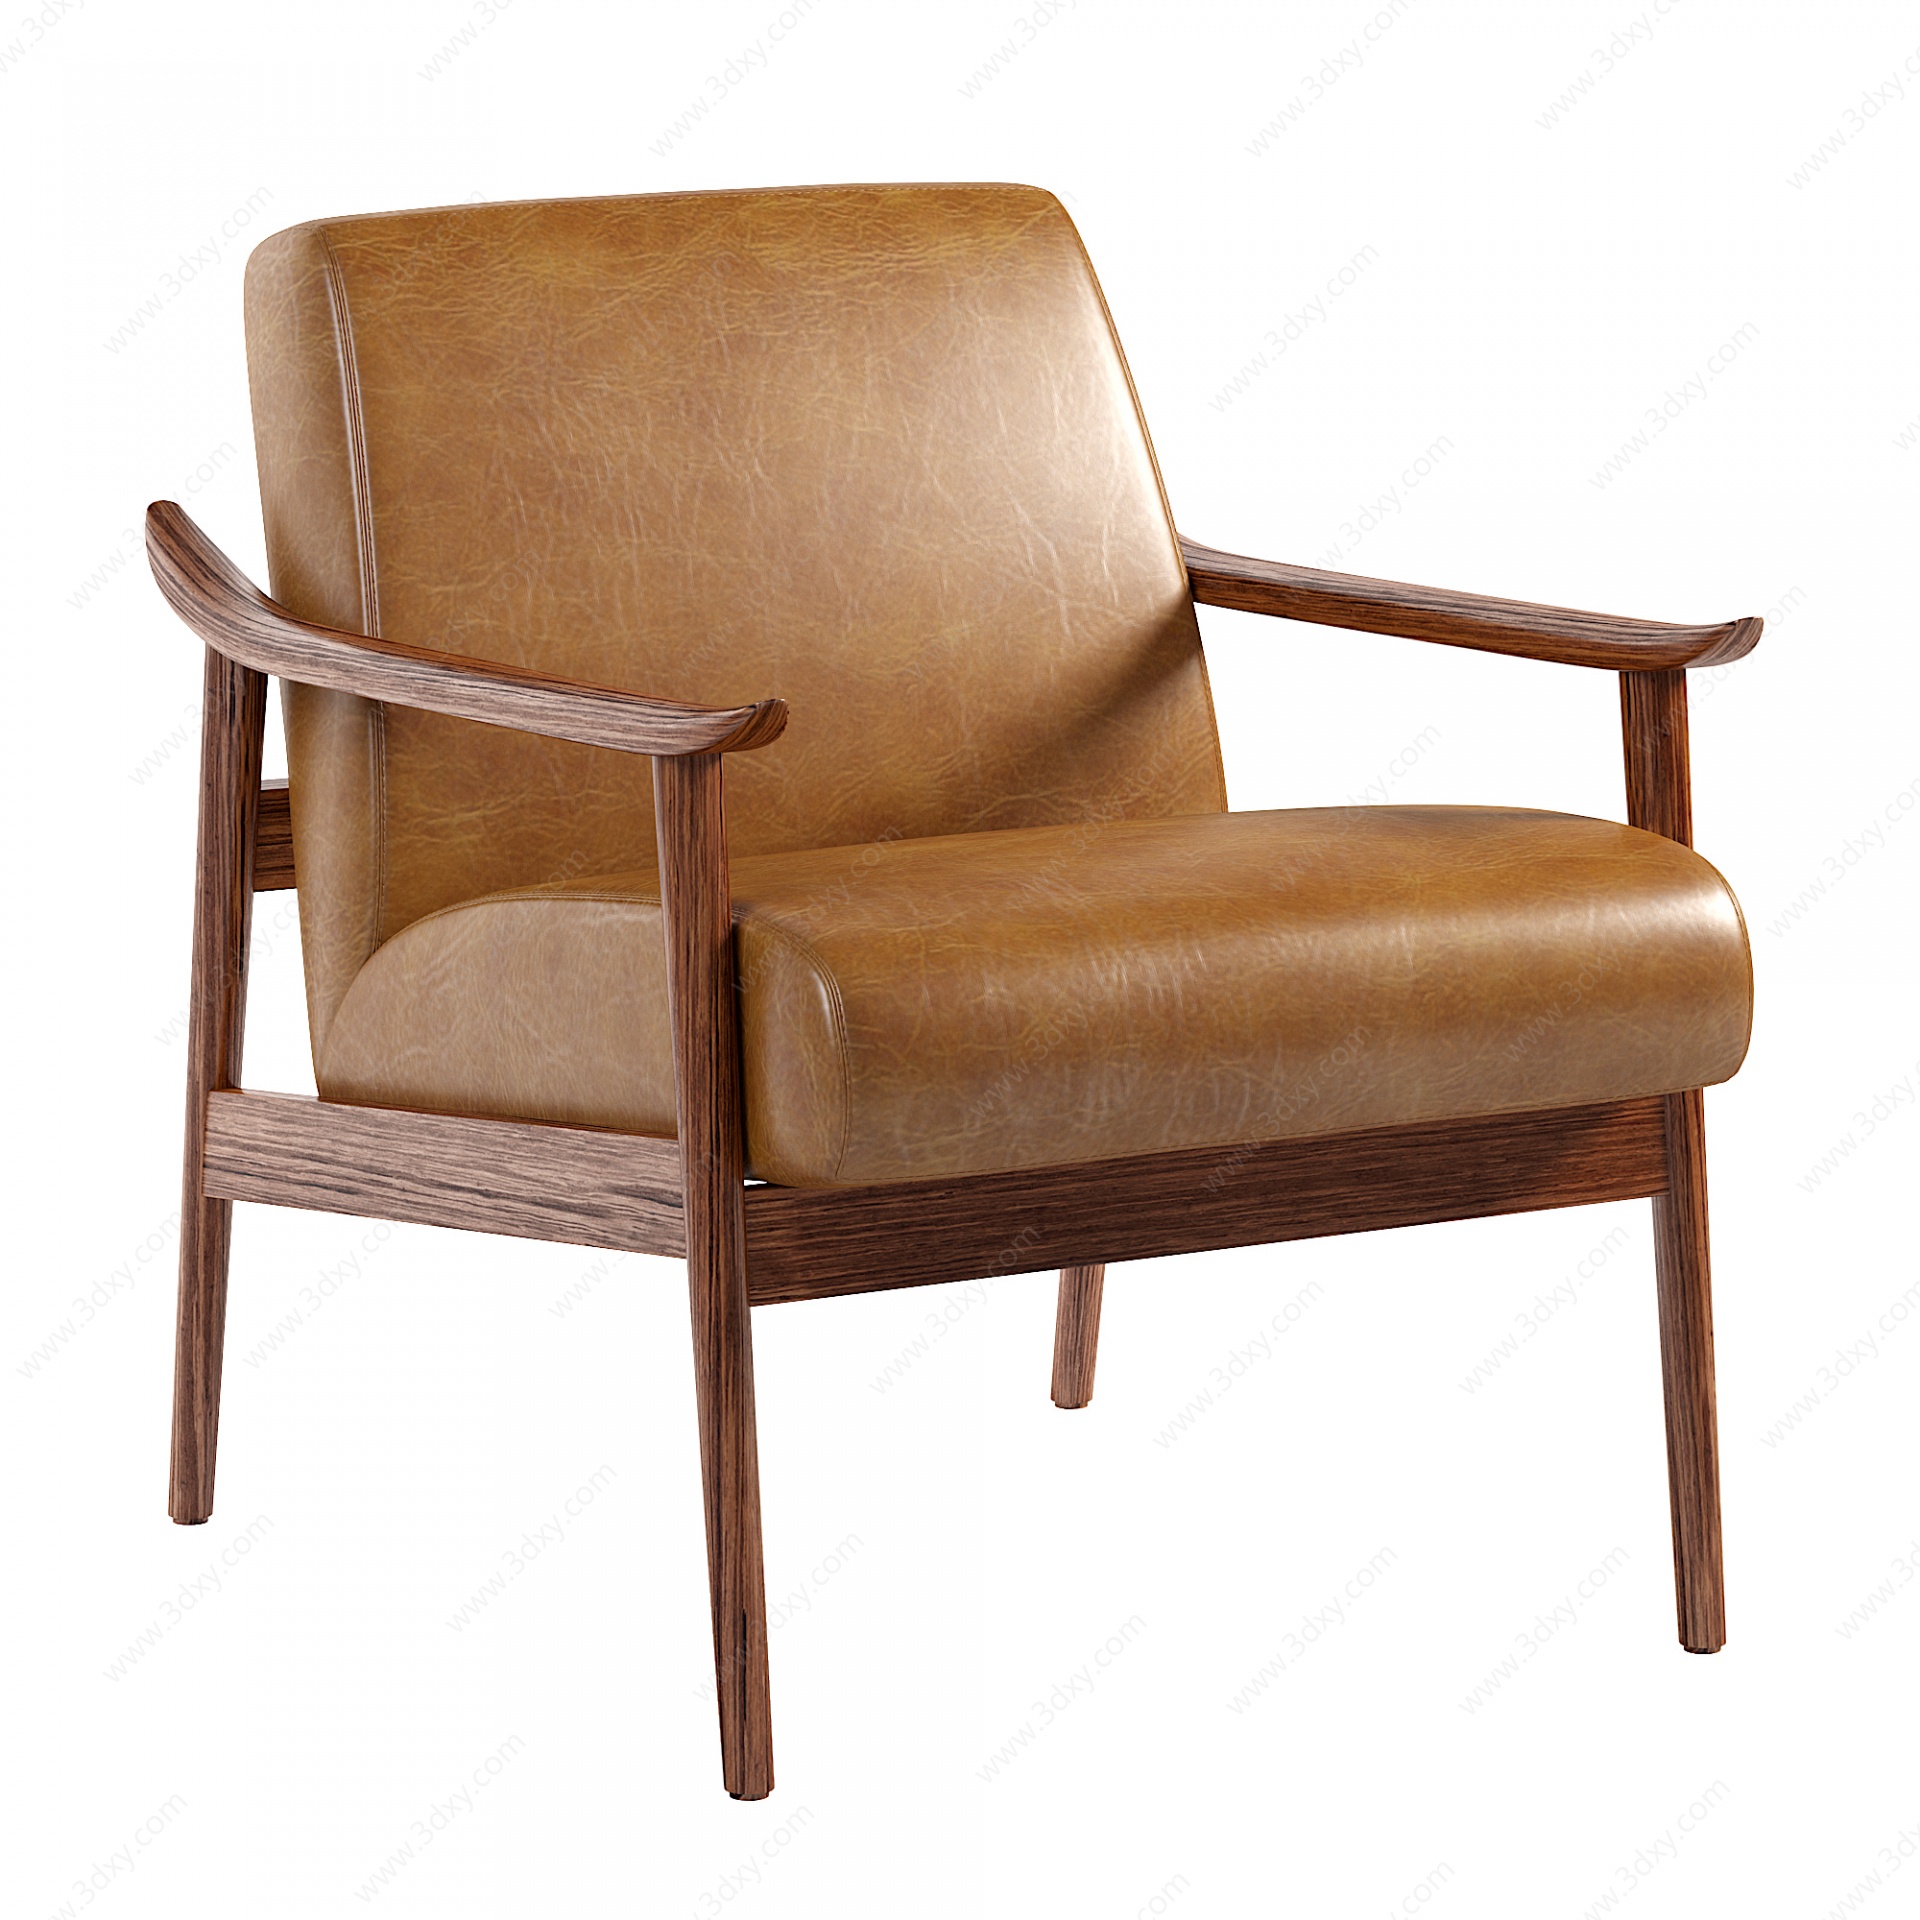 简欧休闲沙发皮质靠背椅子3D模型